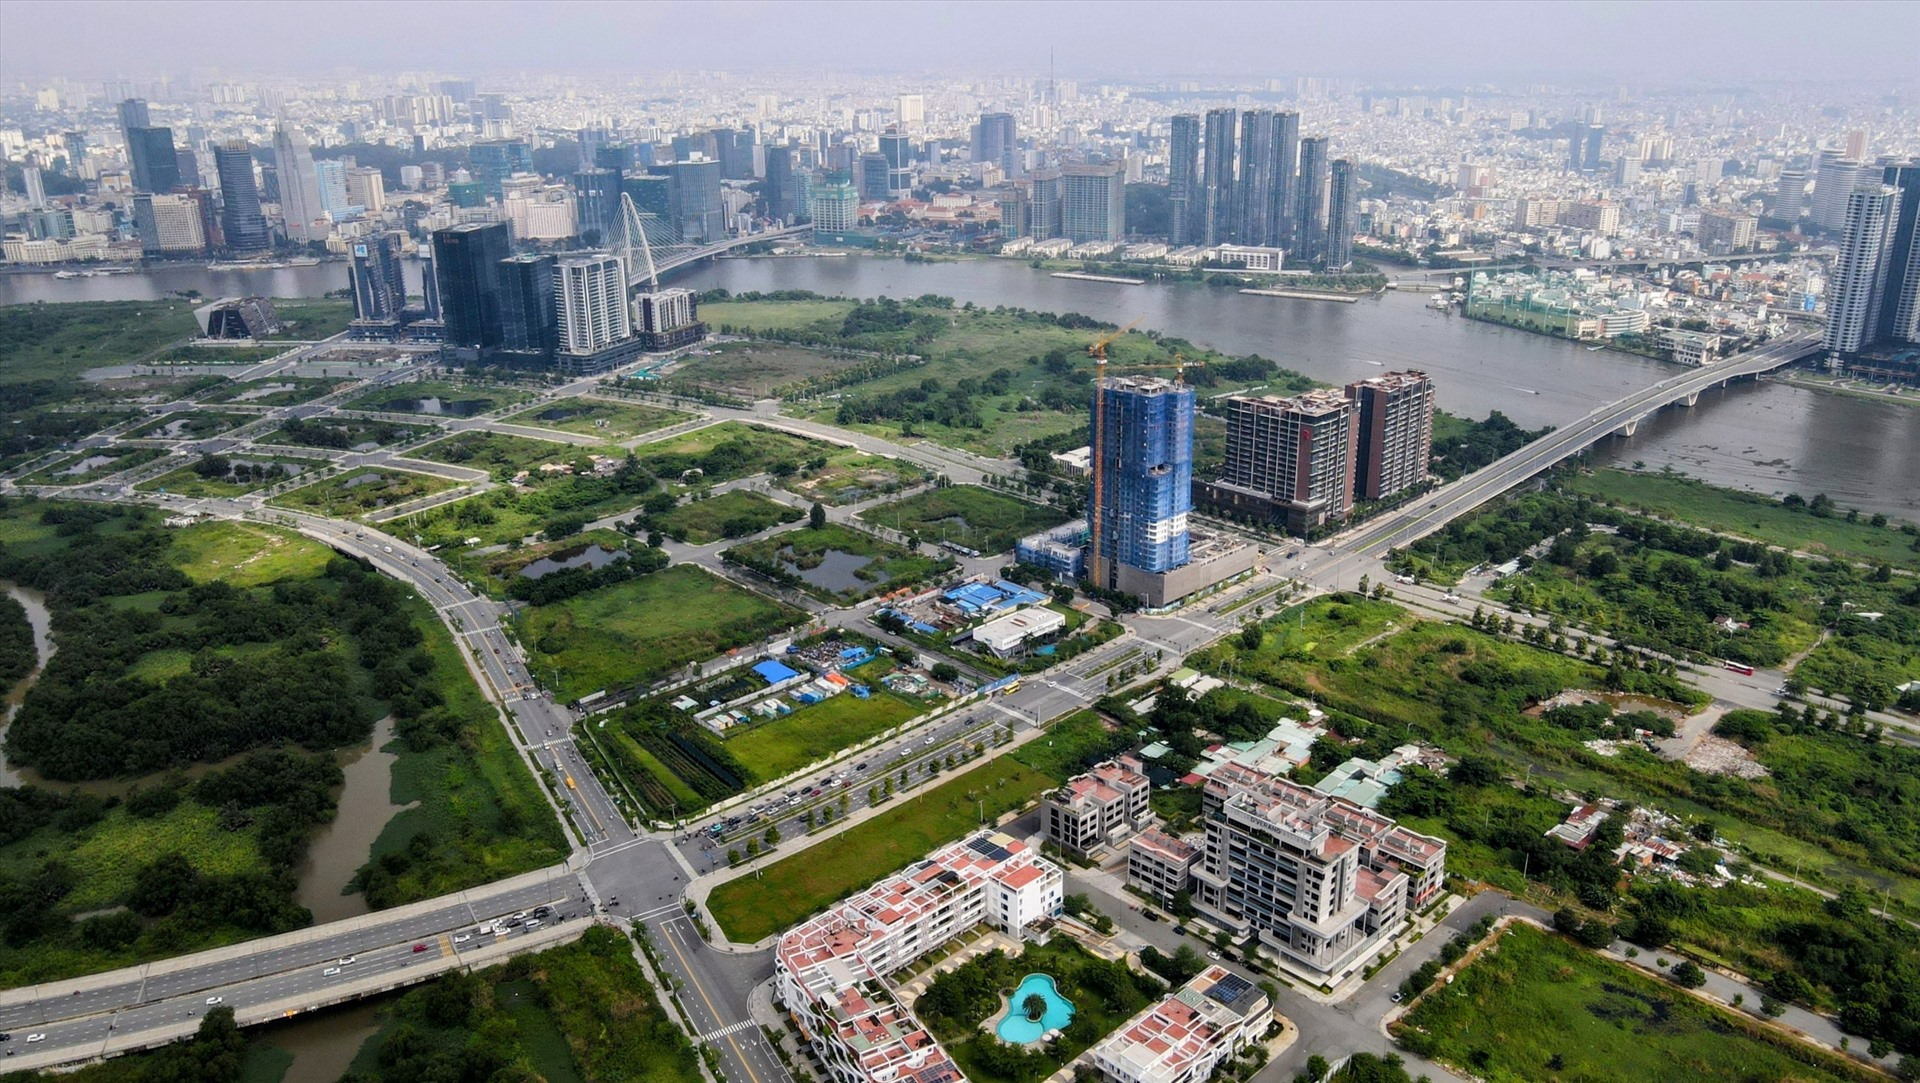 Theo đó, TP Hồ Chí Minh sẽ tổ chức đấu giá 3 lô đất ký hiệu 1-2, 1-3 thuộc khu chức năng số 1 và 3-5 thuộc khu chức năng số 3.  